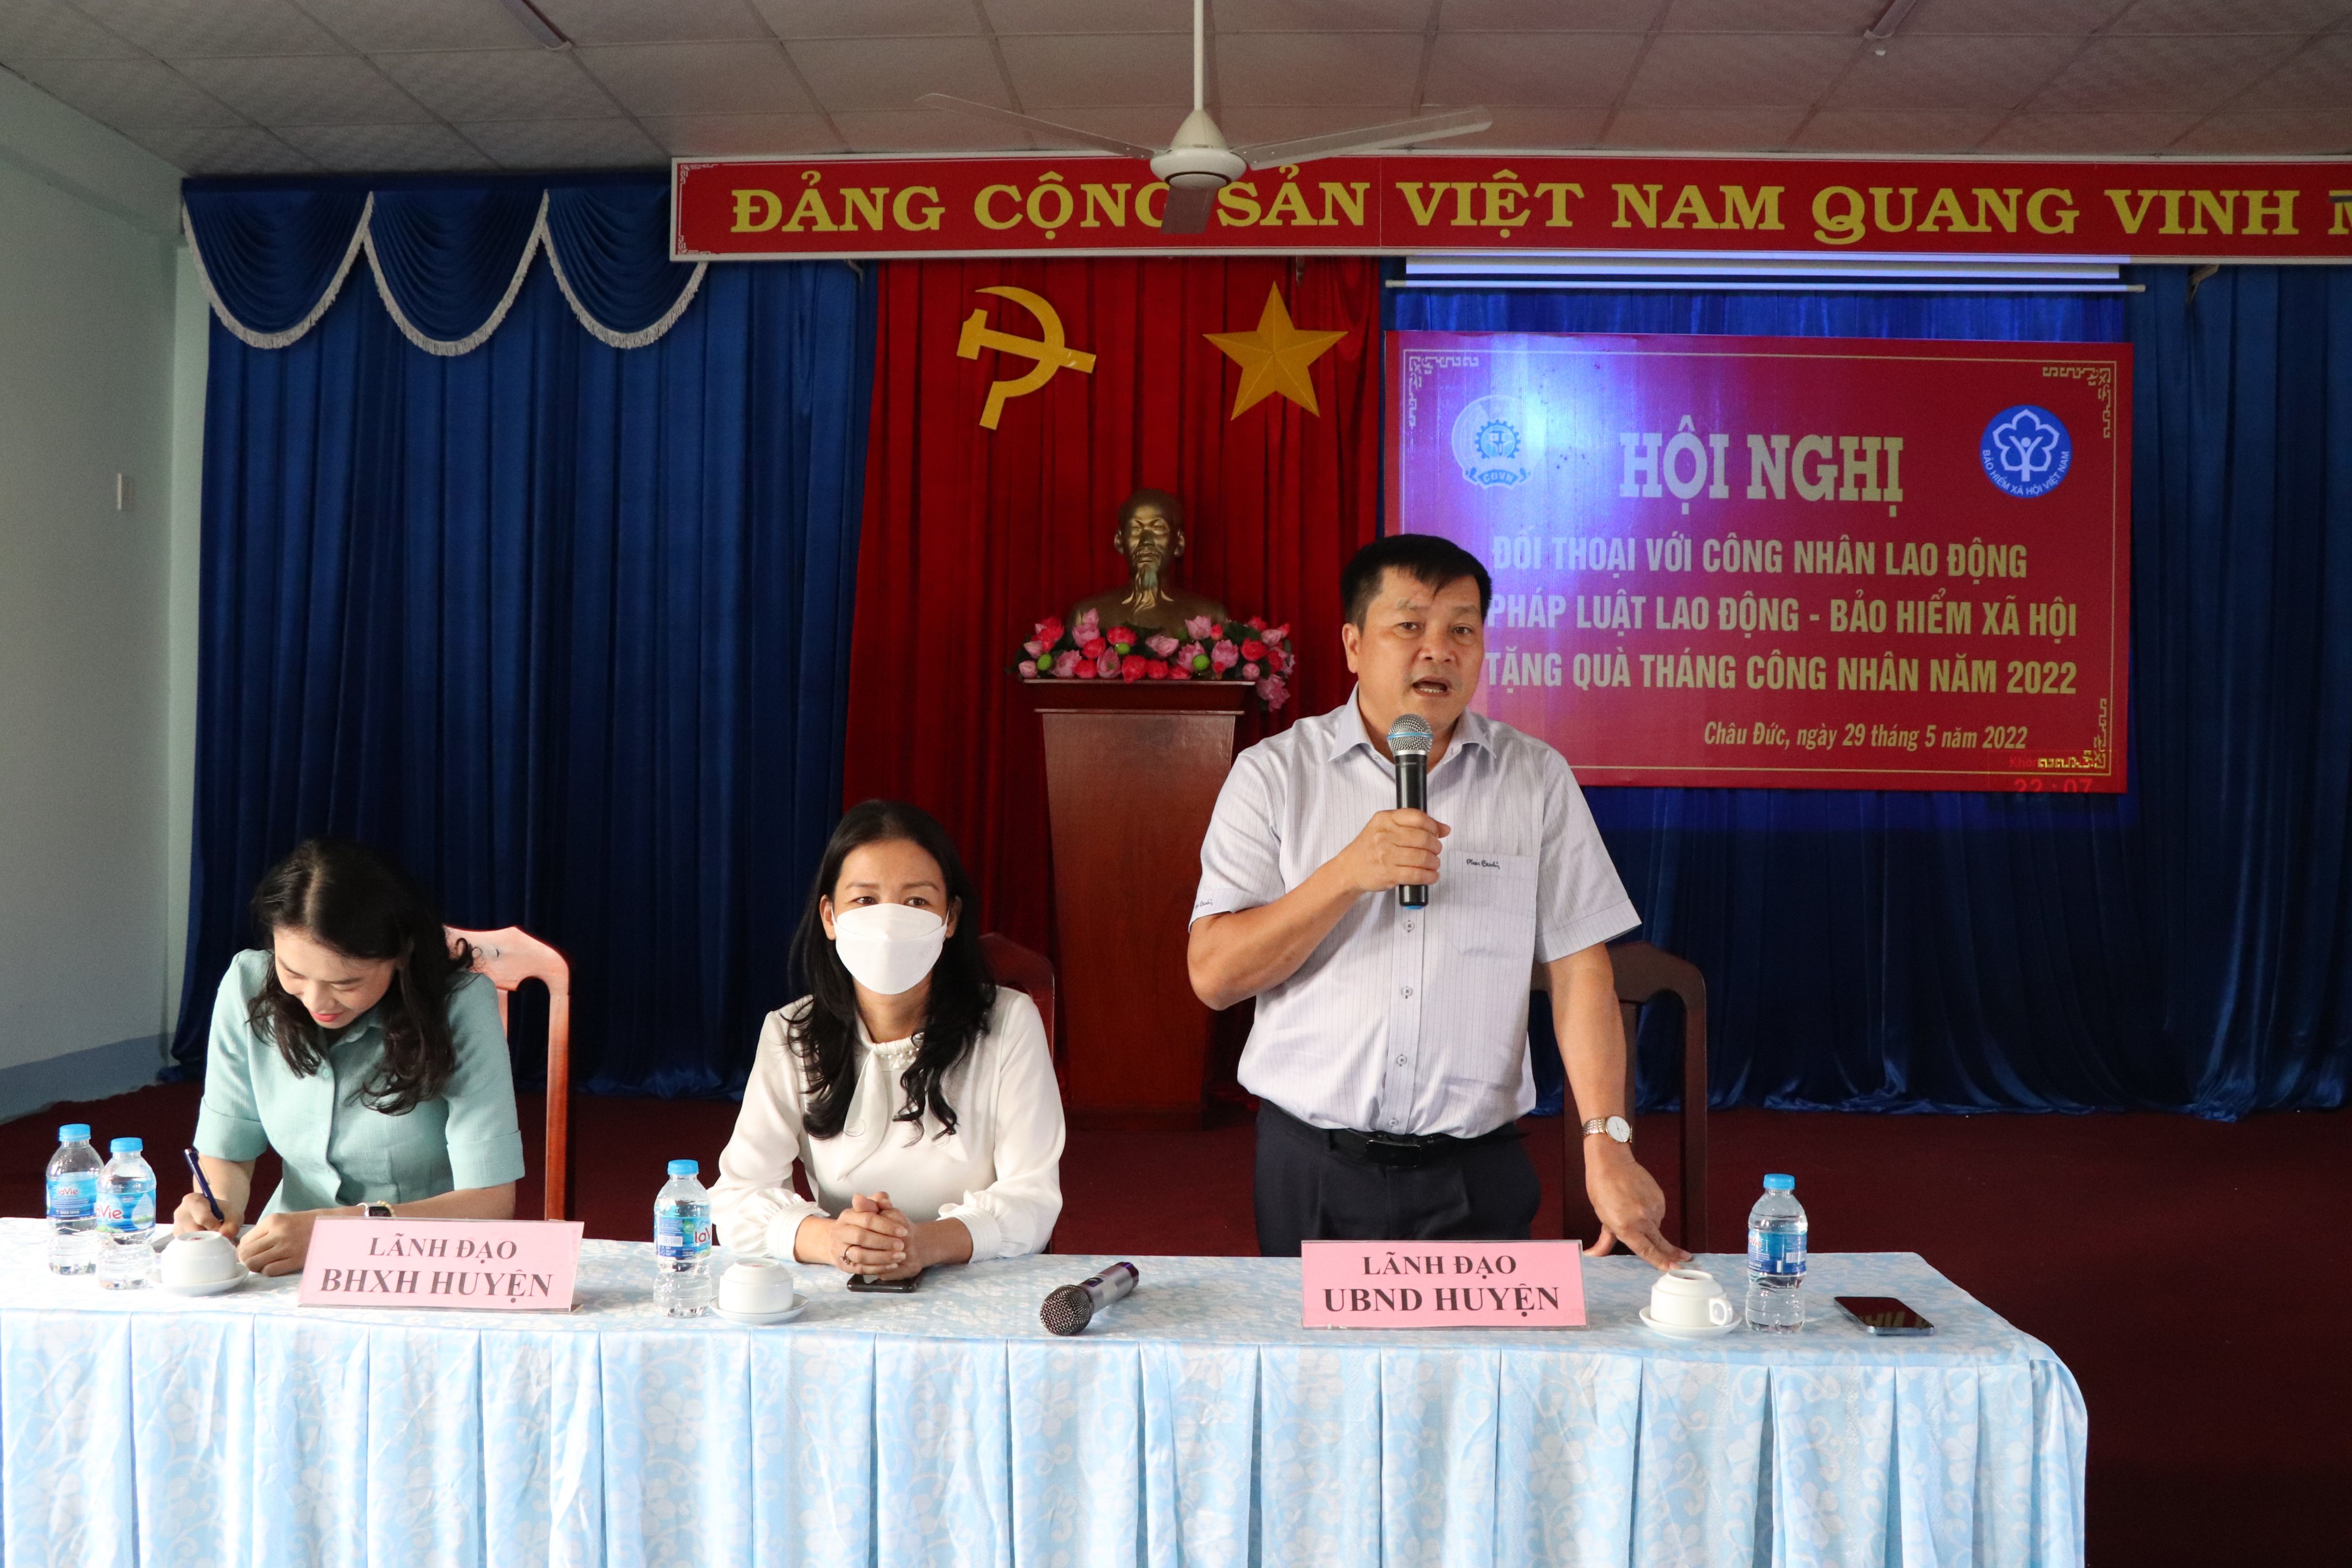 Ông Phạm Văn Quyền, Phó Chủ tịch UBND huyện Châu Đức phát biểu tại buổi đối thoại.